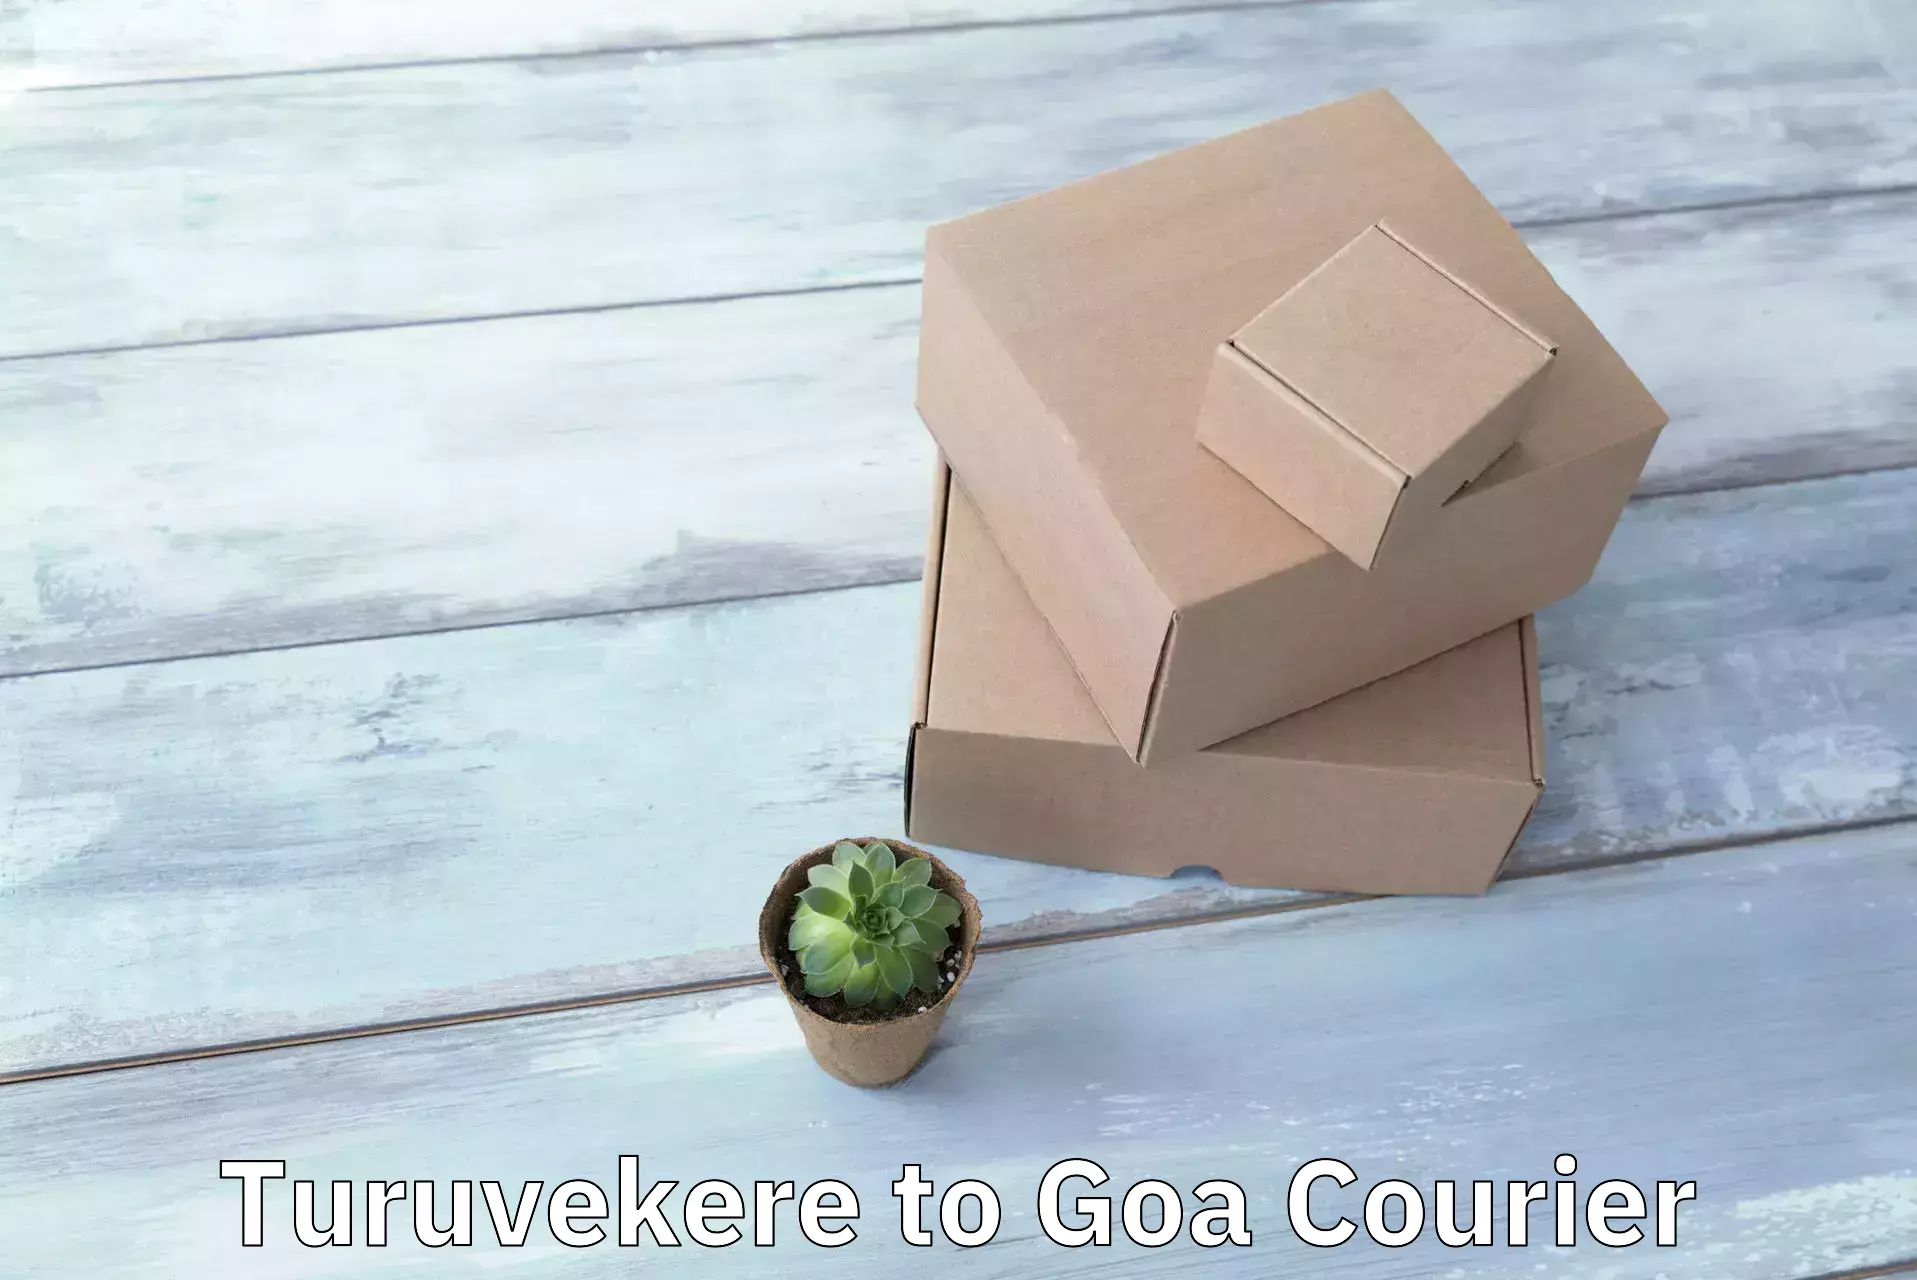 Advanced courier platforms Turuvekere to Goa University